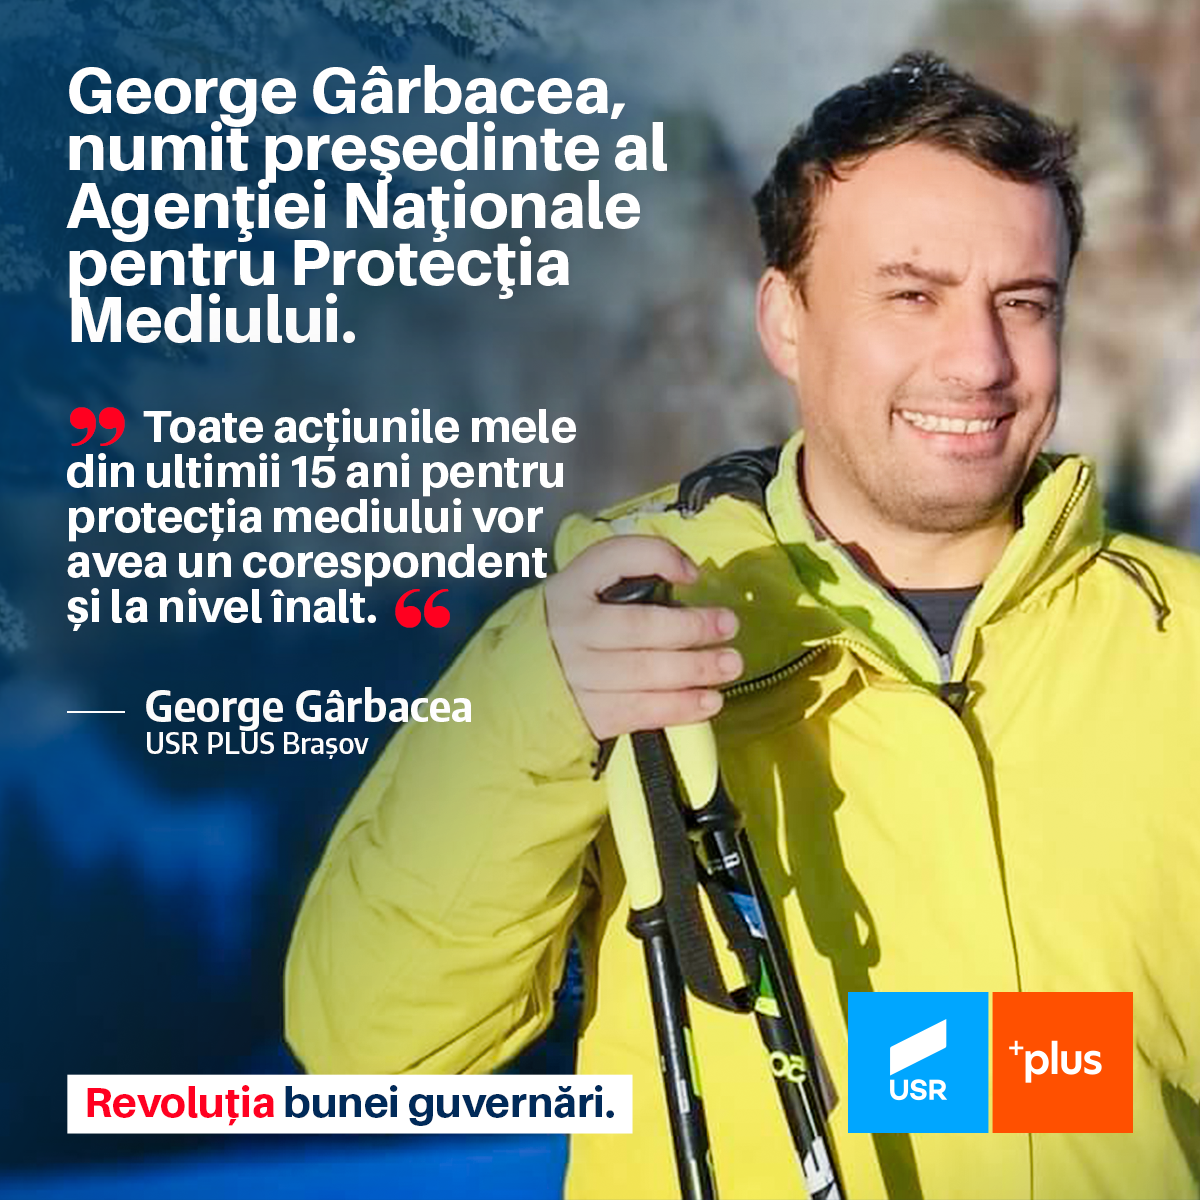 George Gârbacea citat